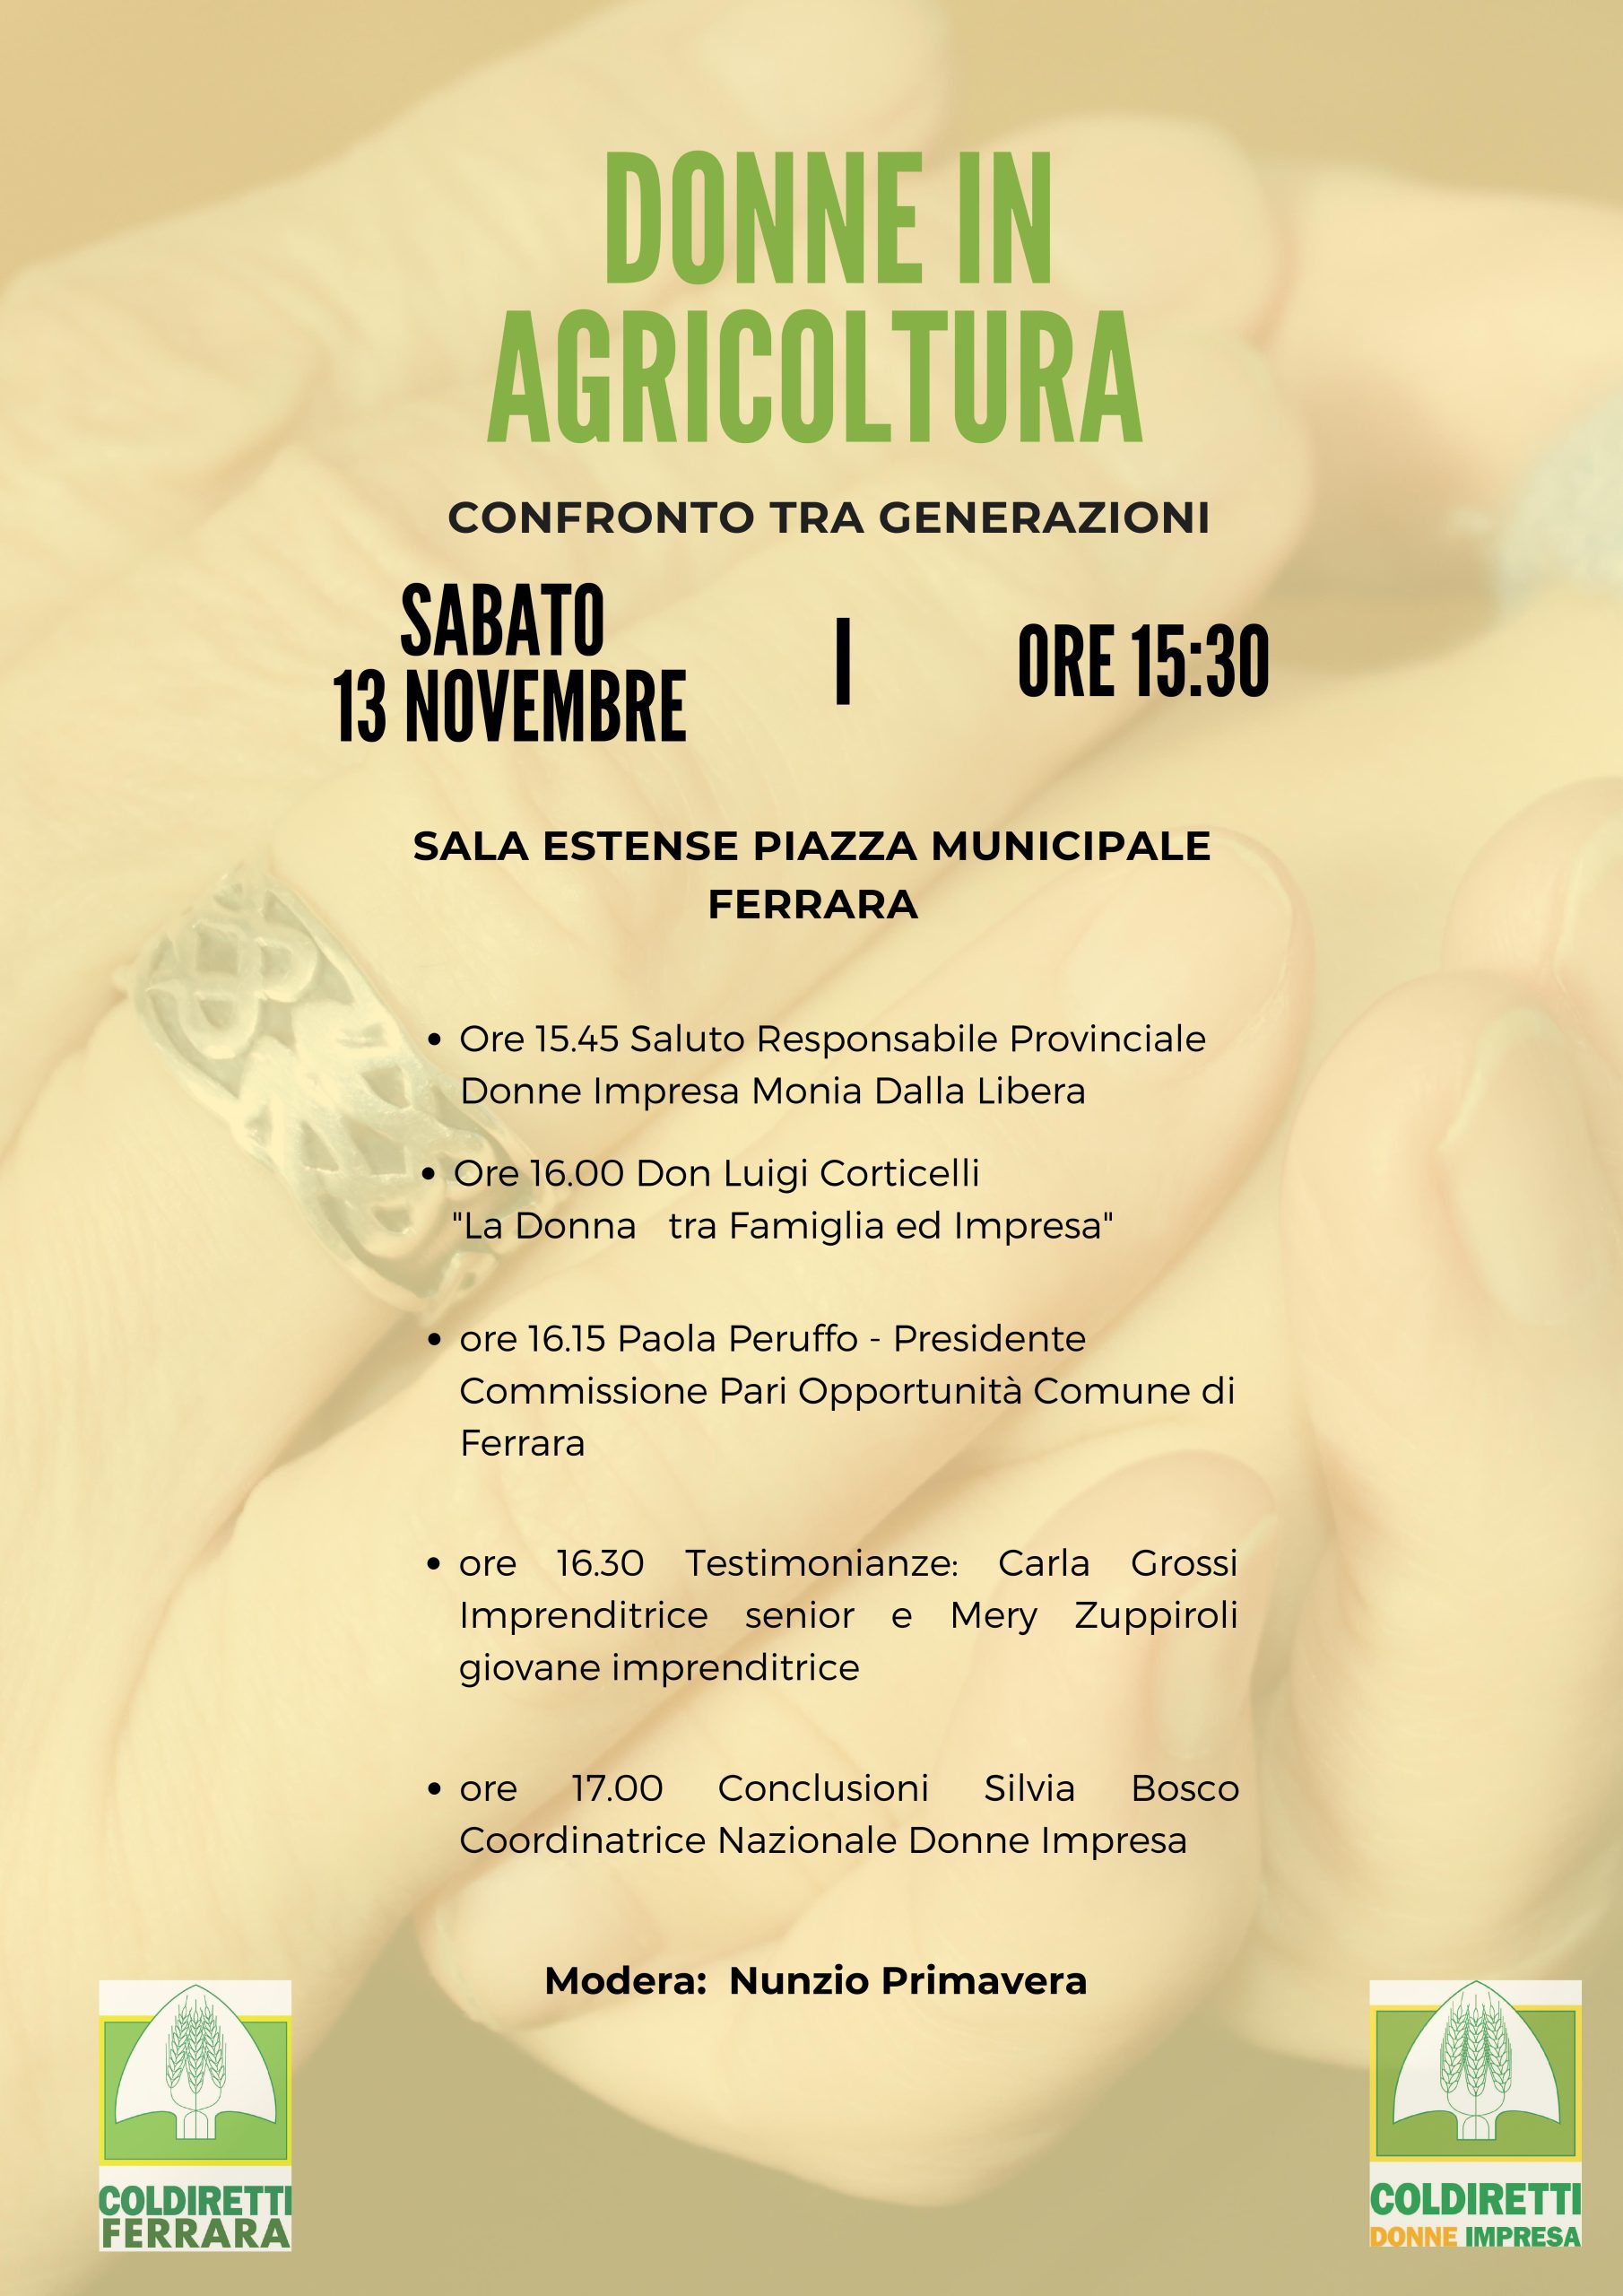 Donne in agricoltura confronto tra generazioni sabato 13 novembre Ferrara